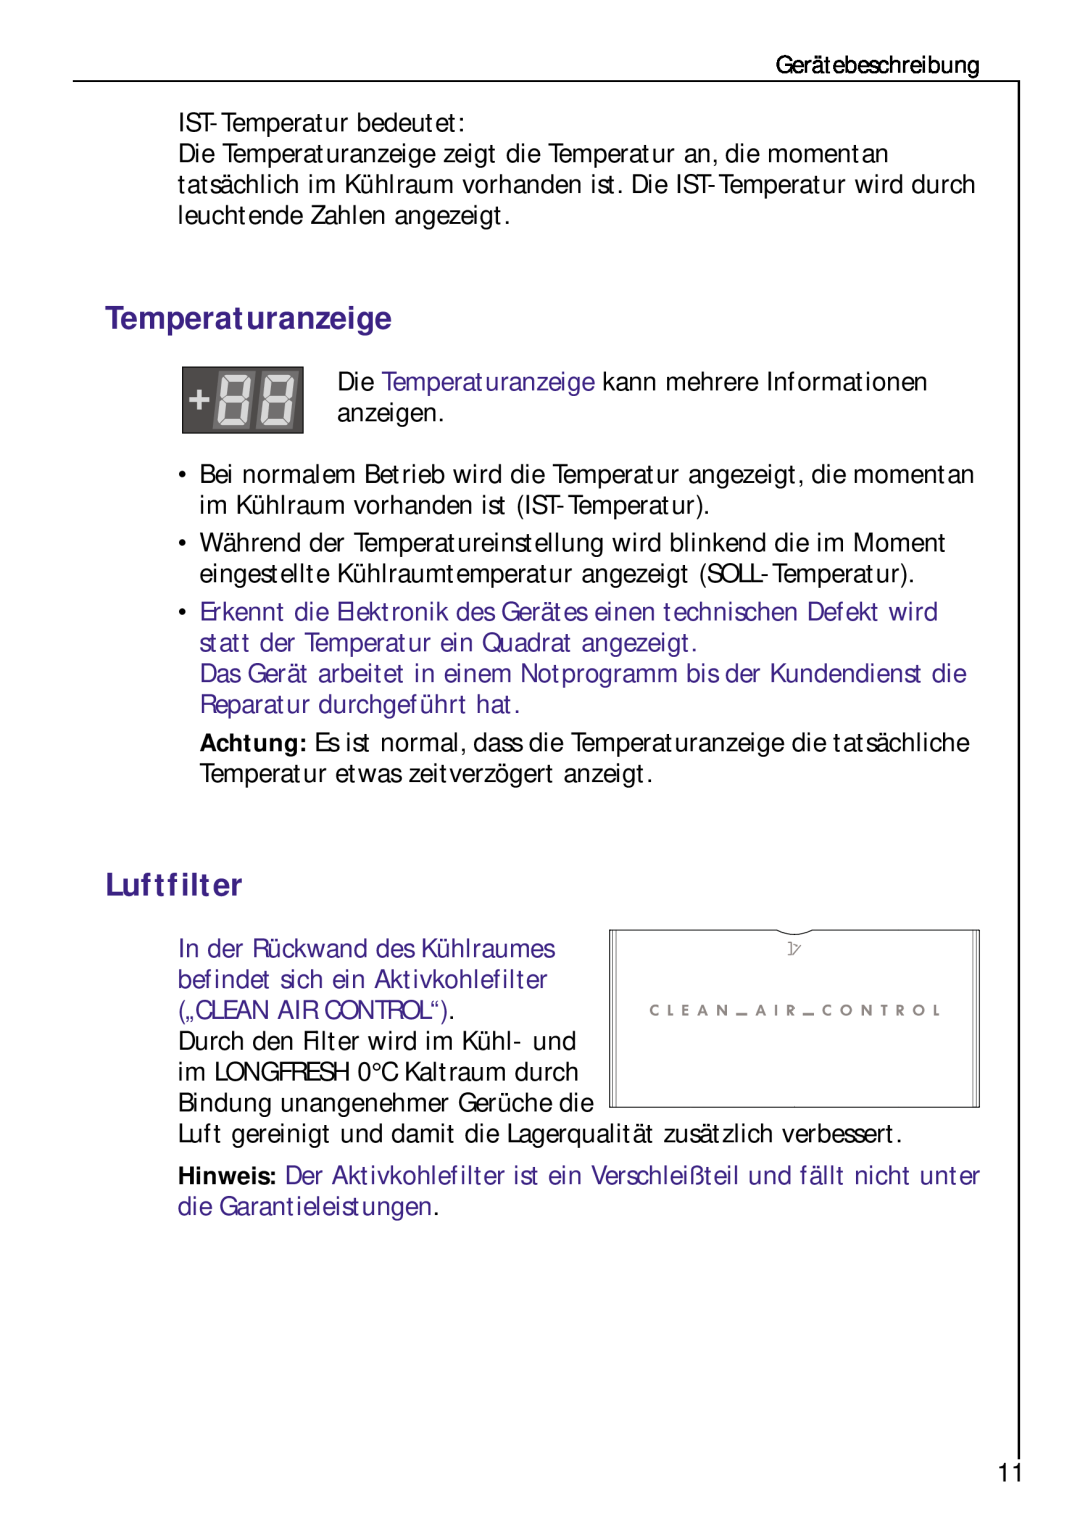 Electrolux Z 9 18 42-4 I user manual Luftfilter, Die Temperaturanzeige kann mehrere Informationen anzeigen 